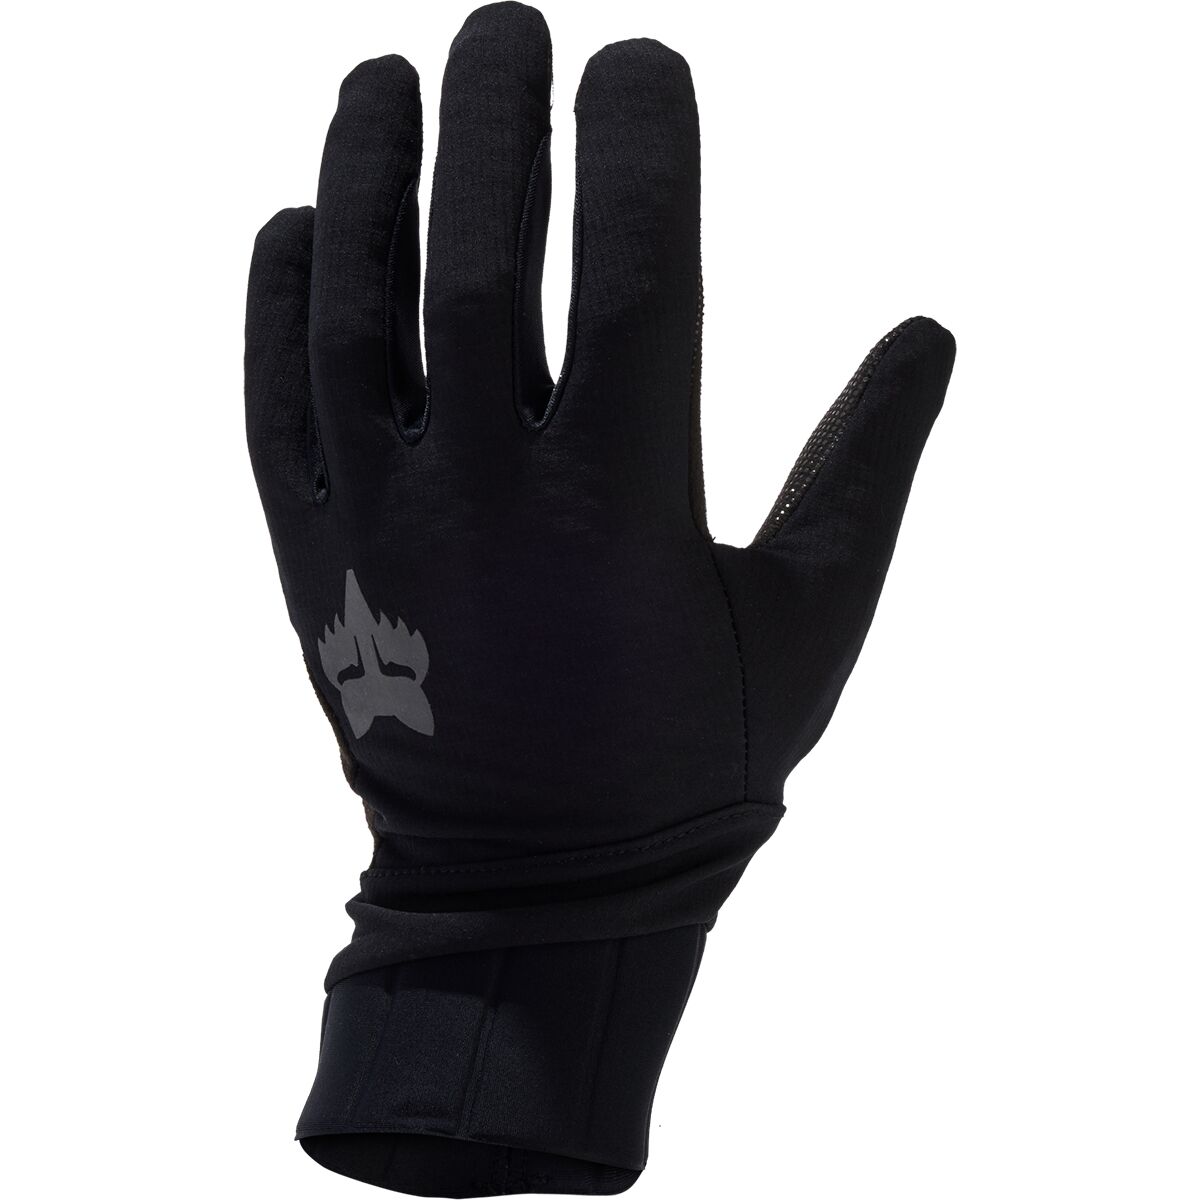 Fox Racing Defend Pro Fire Glove - Men's